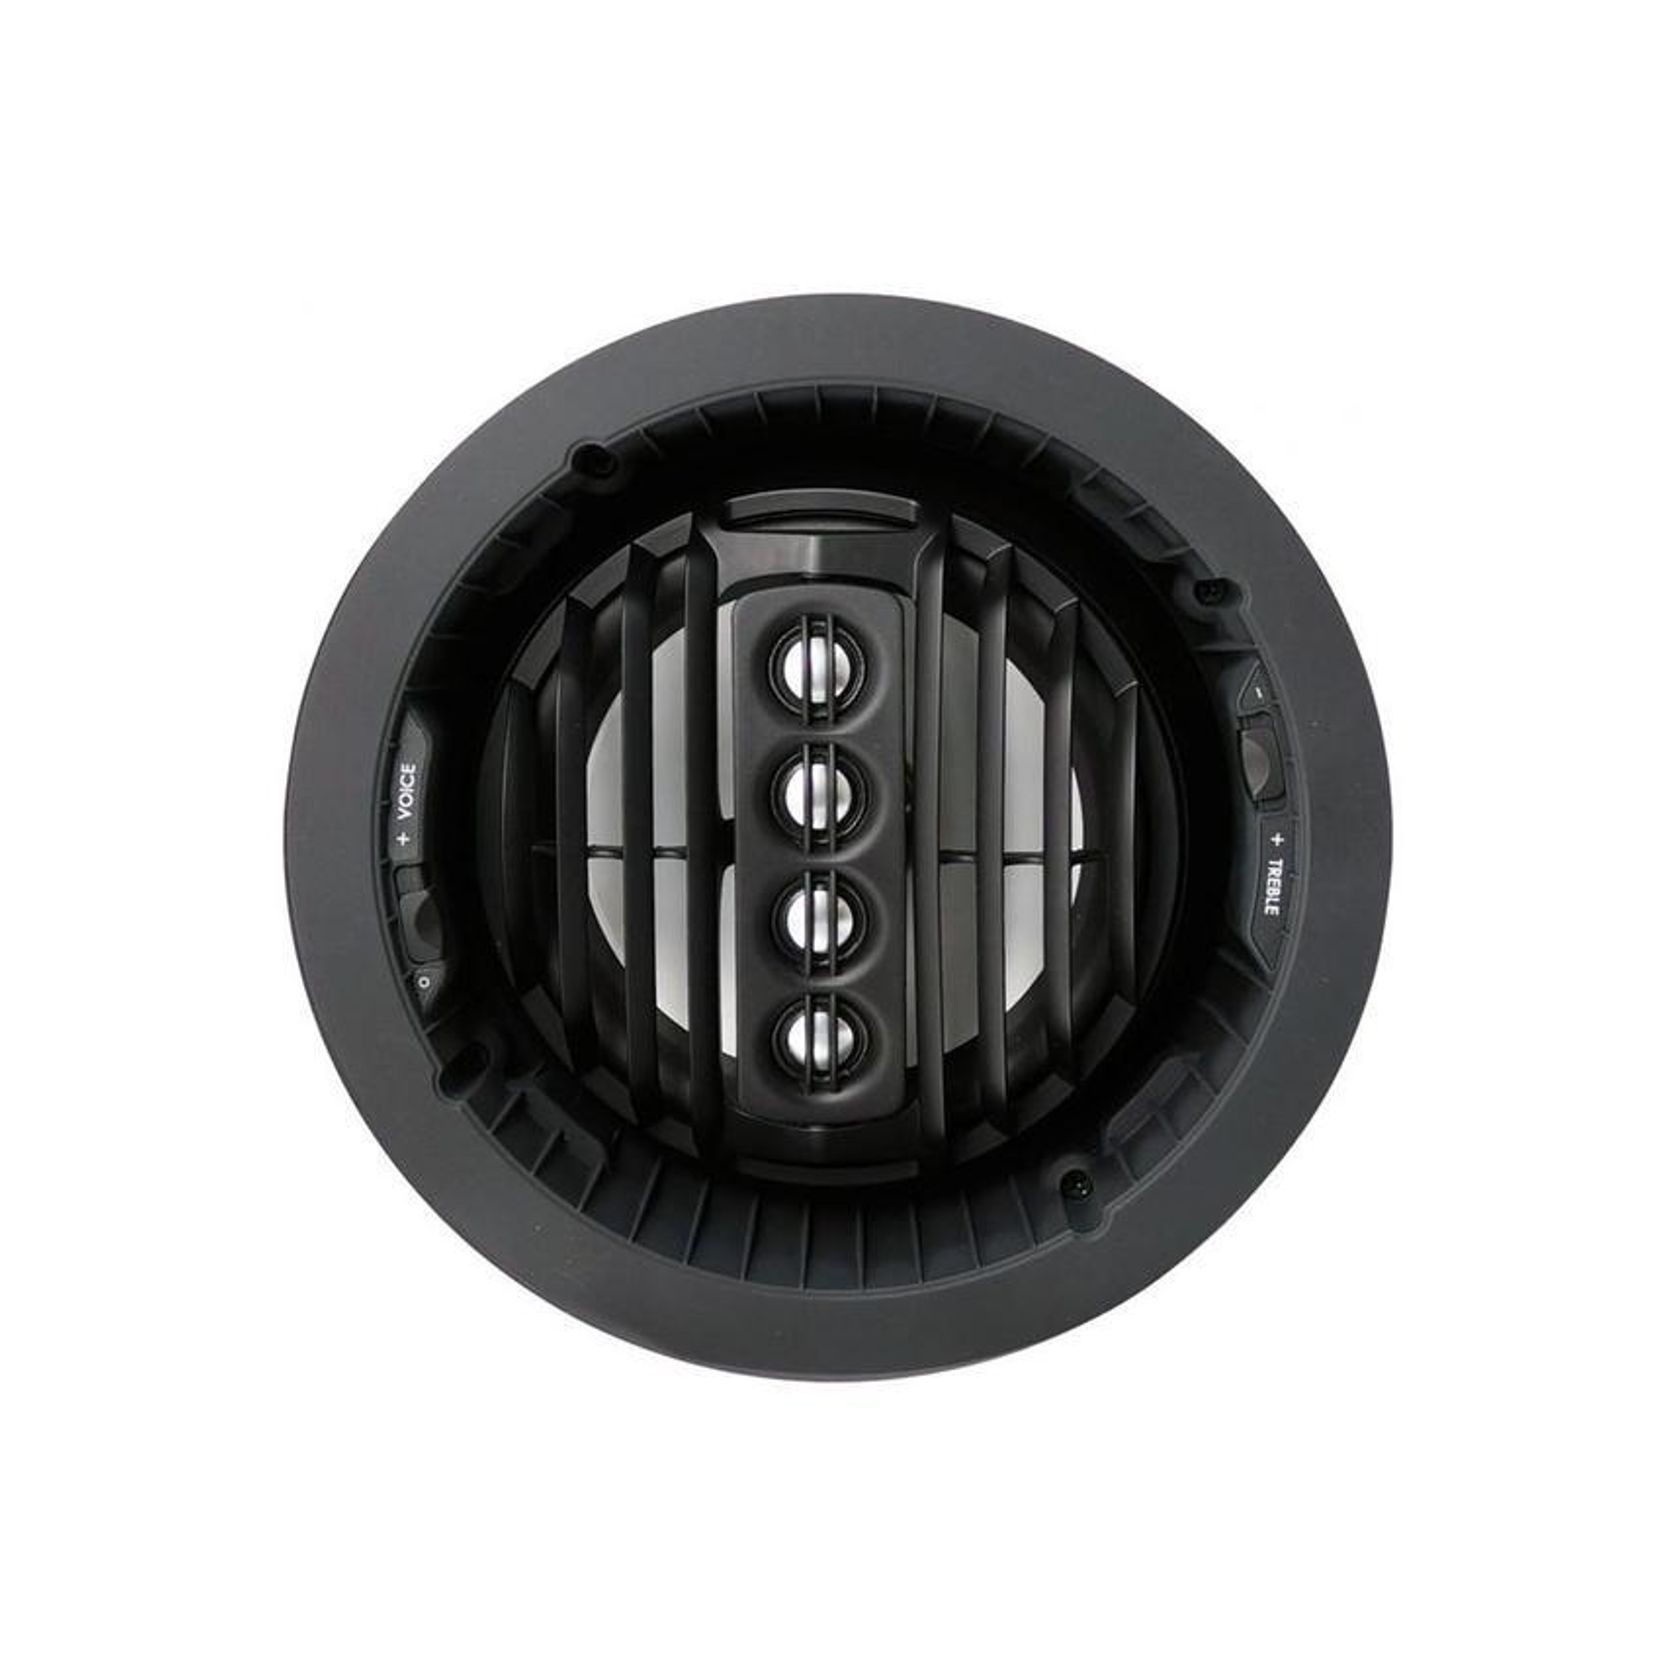 Speakercraft Profile Aim Series 273 In-Ceiling Speakers gallery detail image